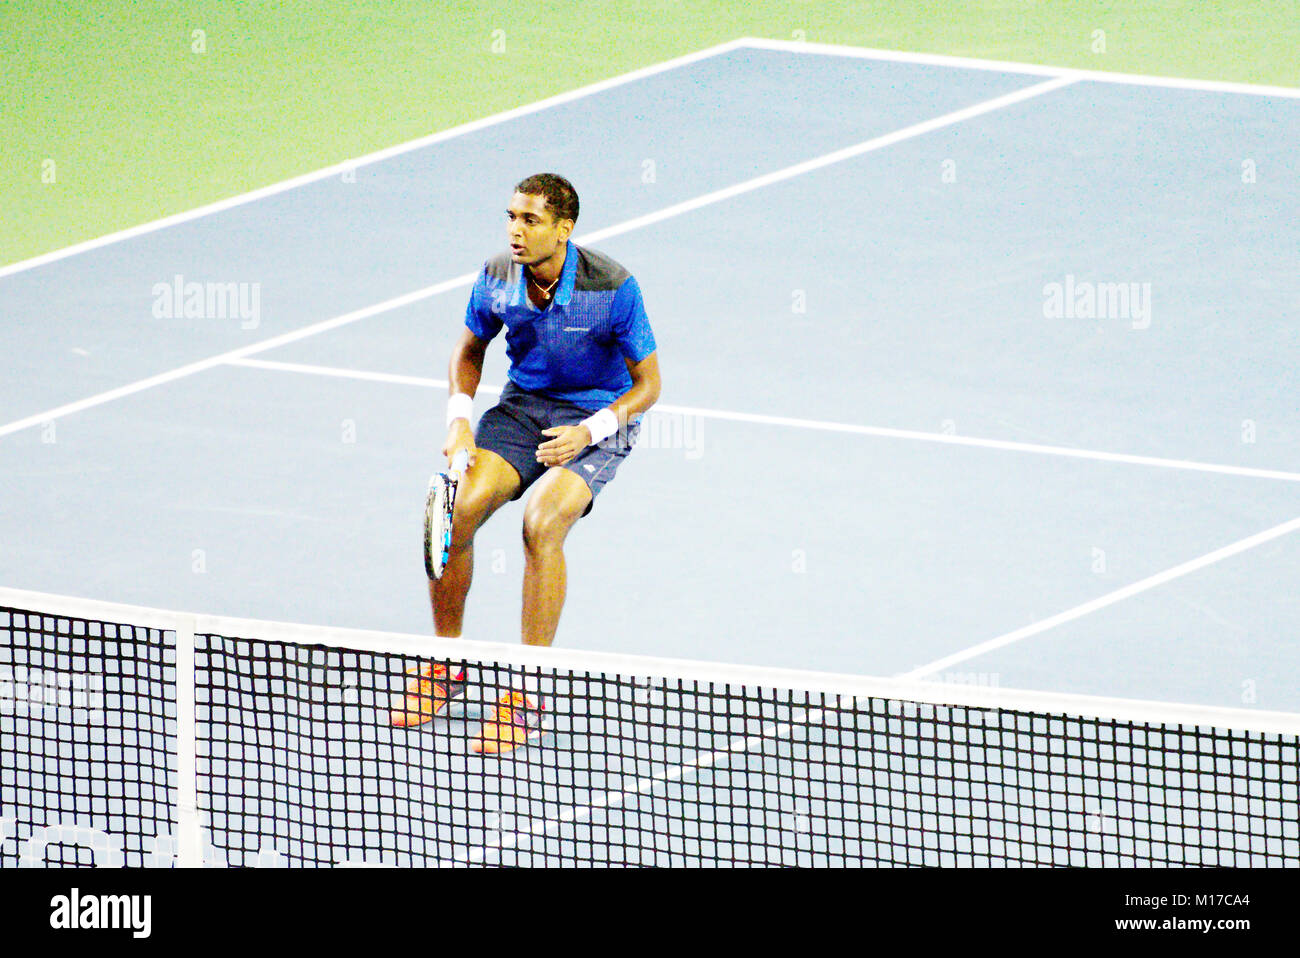 Pune, Inde. 1er janvier 2018. Ramakumar Ramanathan de l'Inde, dans l'action dans le premier tour de Tata ouvrir le tournoi de tennis de Maharashtra. Banque D'Images